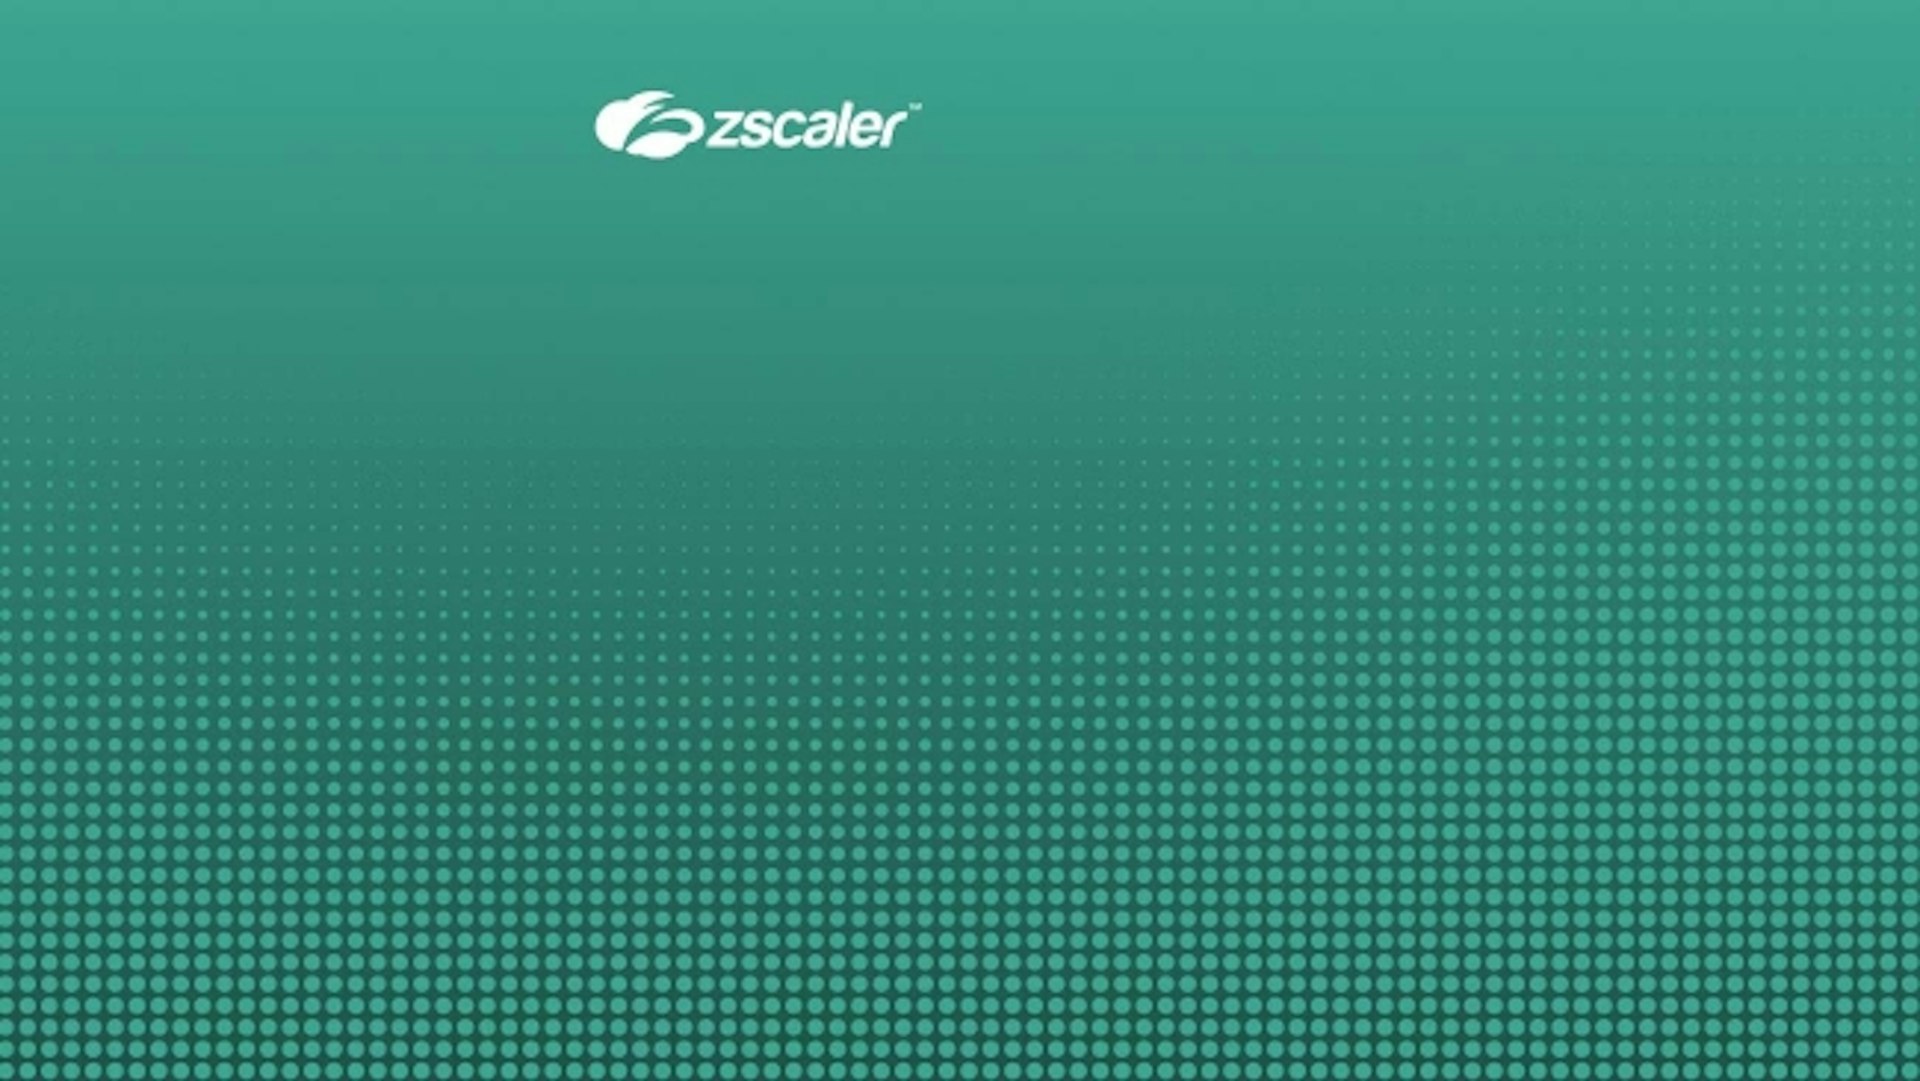 Acceso remoto privilegiado de Zscaler para la seguridad de OT y IIoT